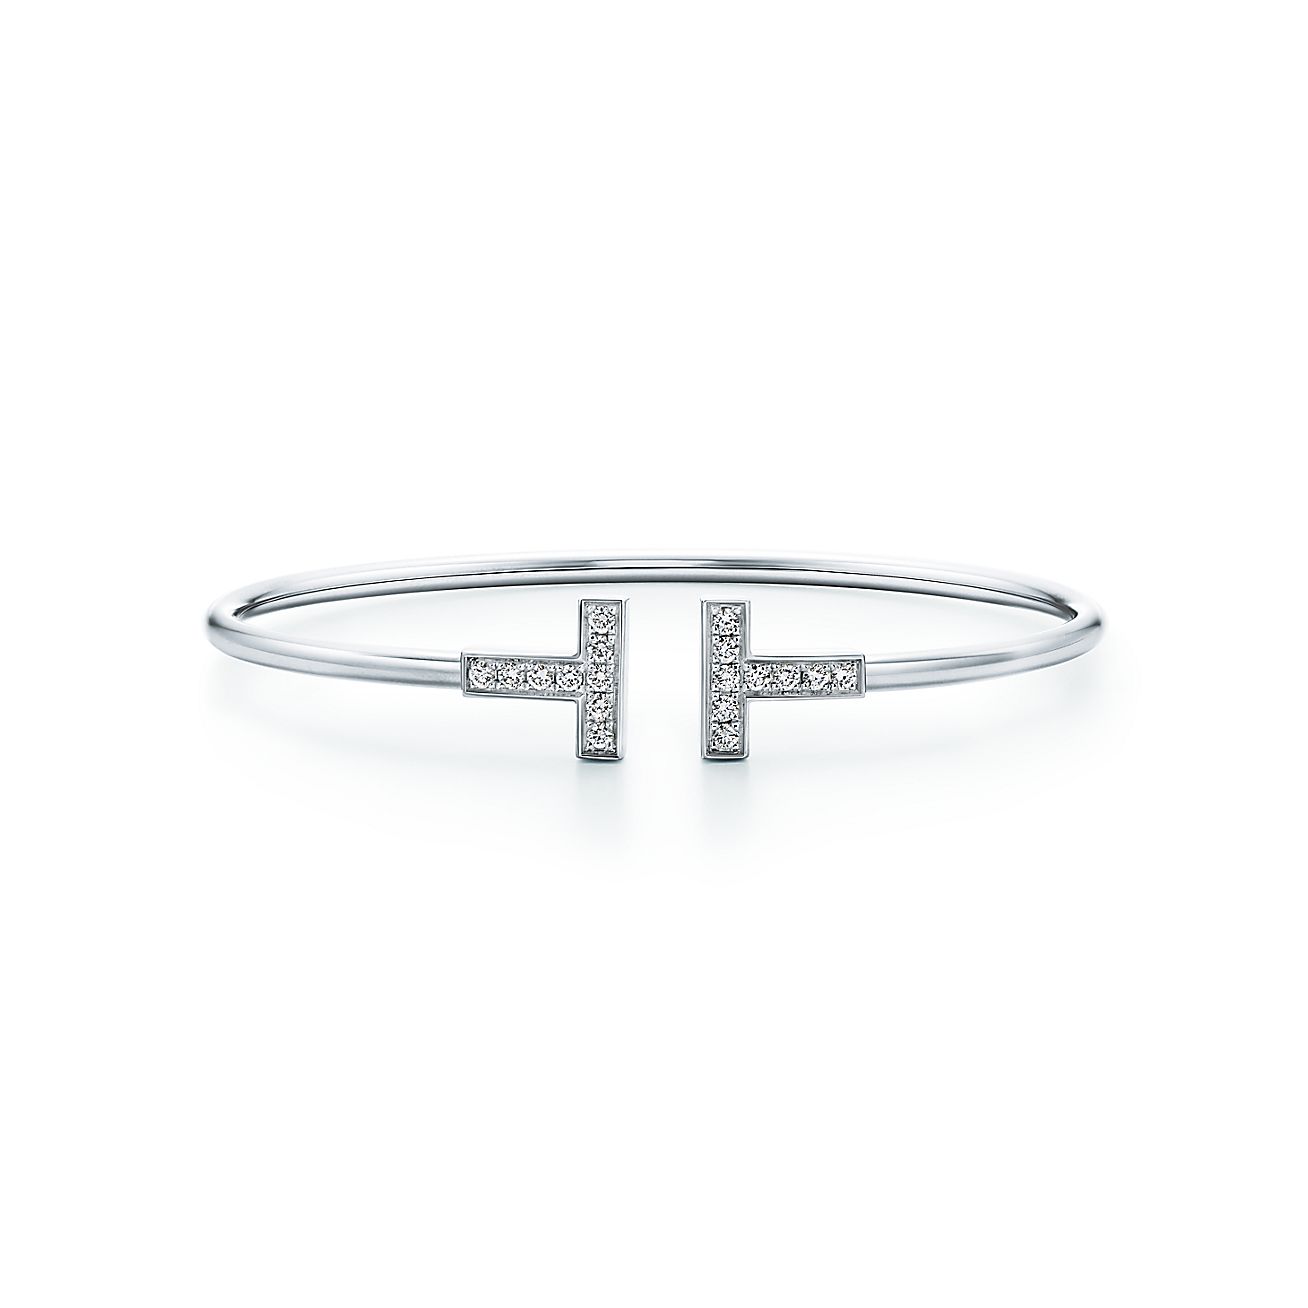 Brazalete Tiffany T Wire de oro blanco 18k con diamantes, grande. | Tiffany & Co.